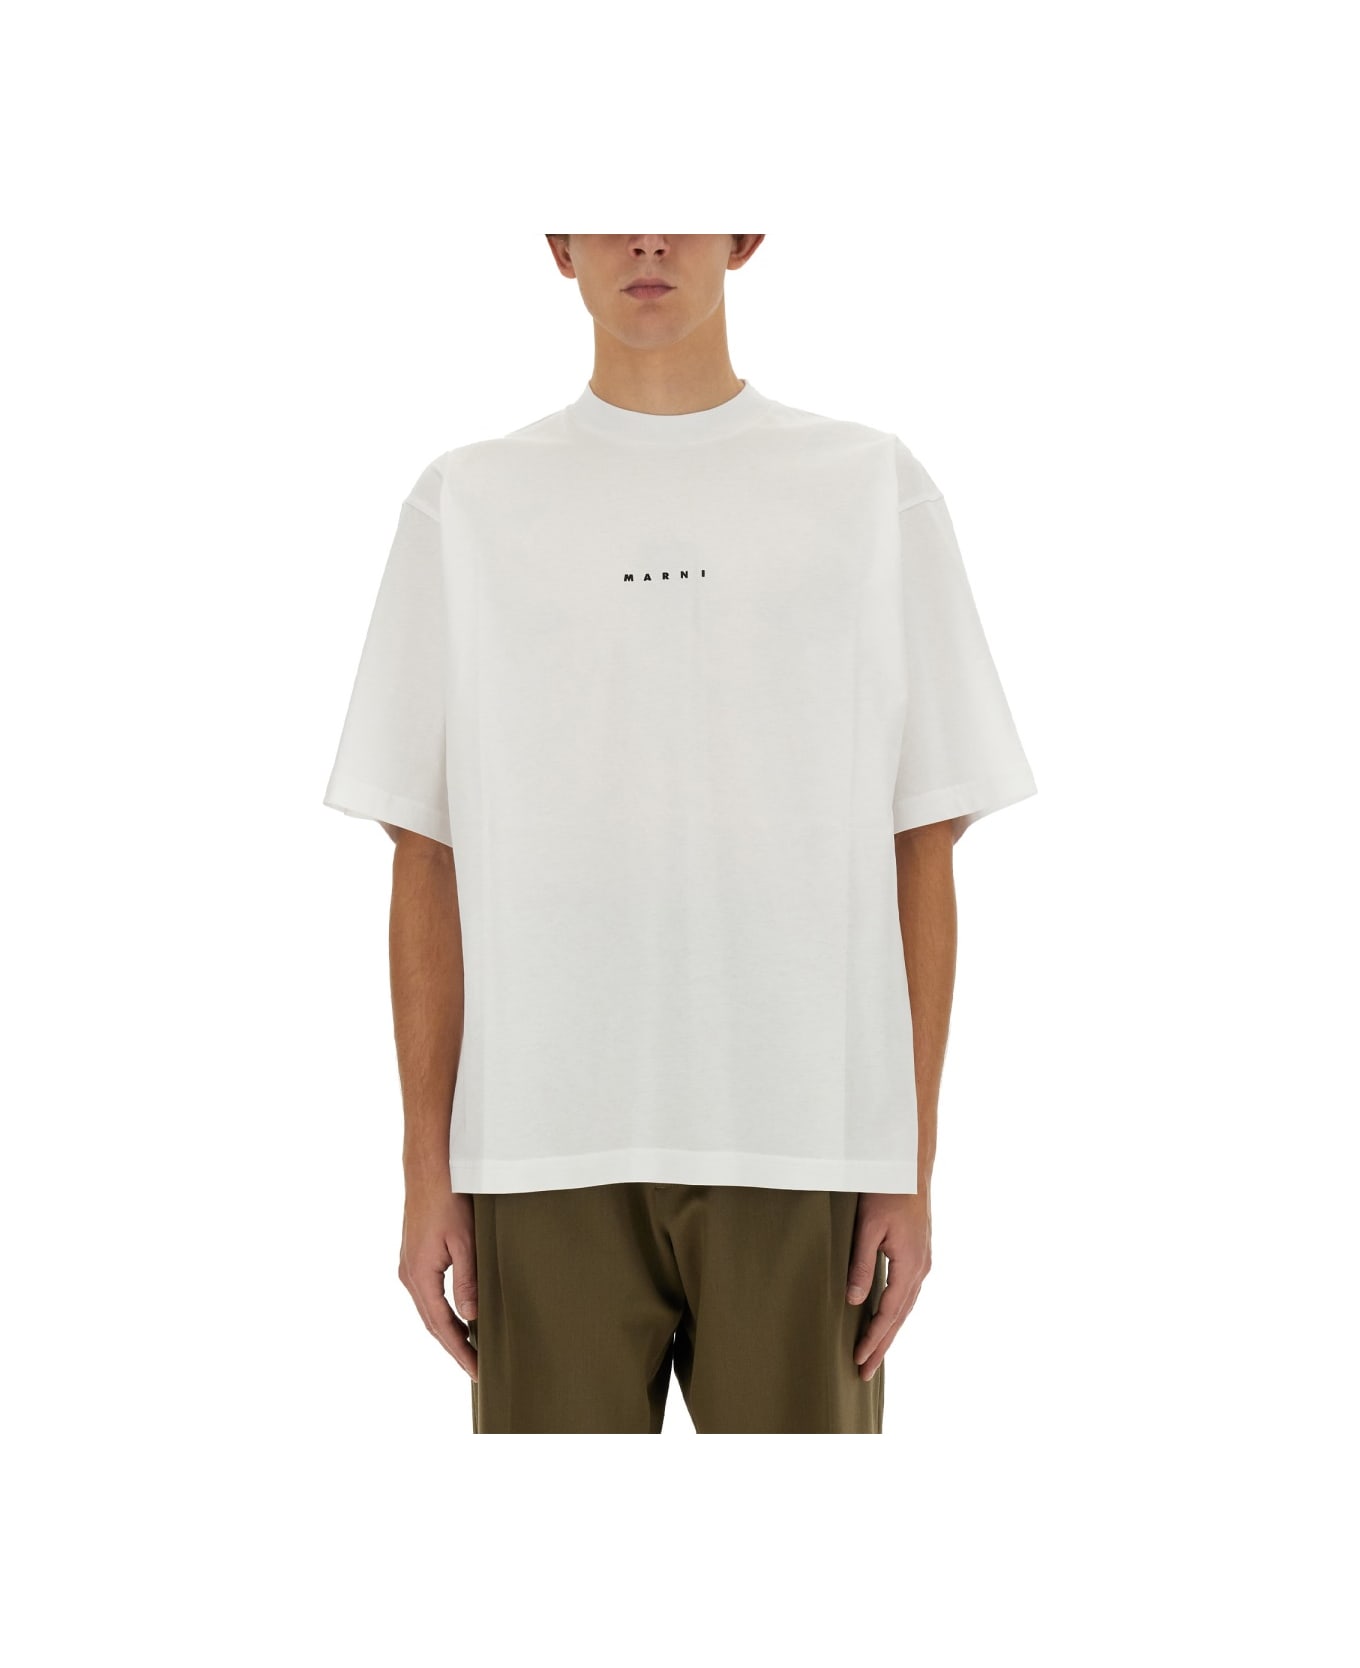 Marni Jersey T-shirt - WHITE